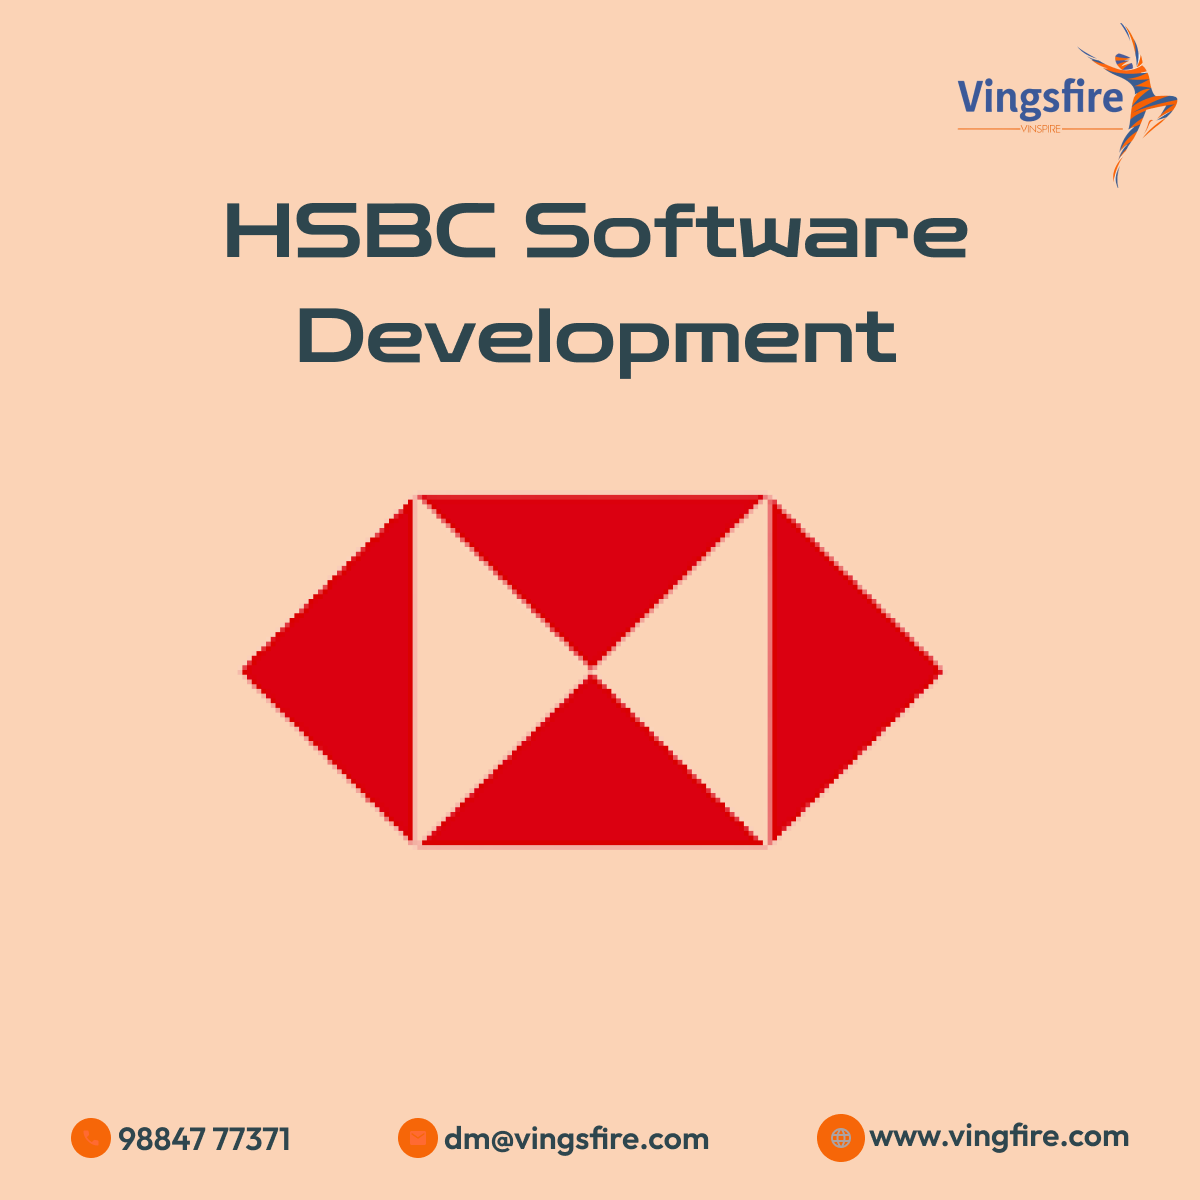 HSBC Software Development